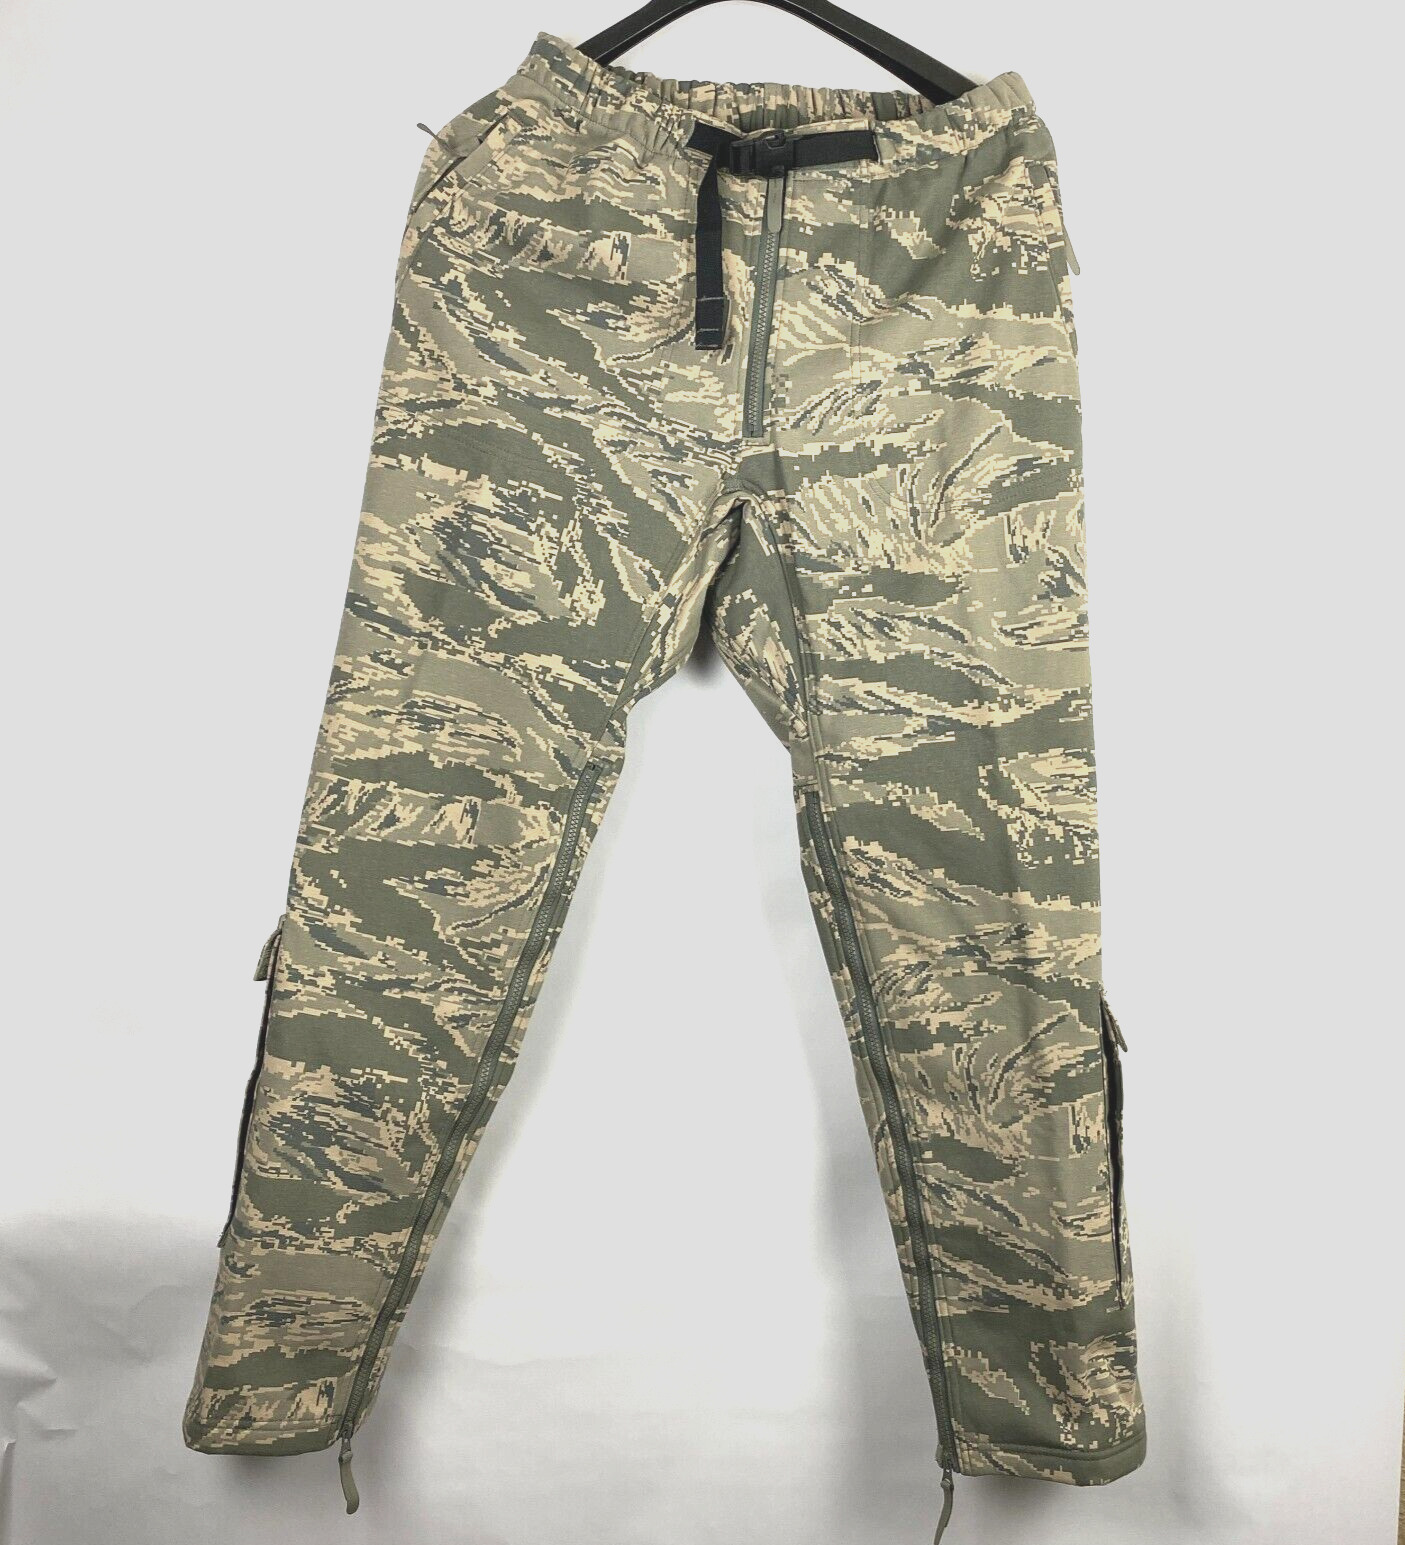 USAF MASSIF Elements Pants ABU Tiger Stripe Nomex Flame Resistant Size MED EUC